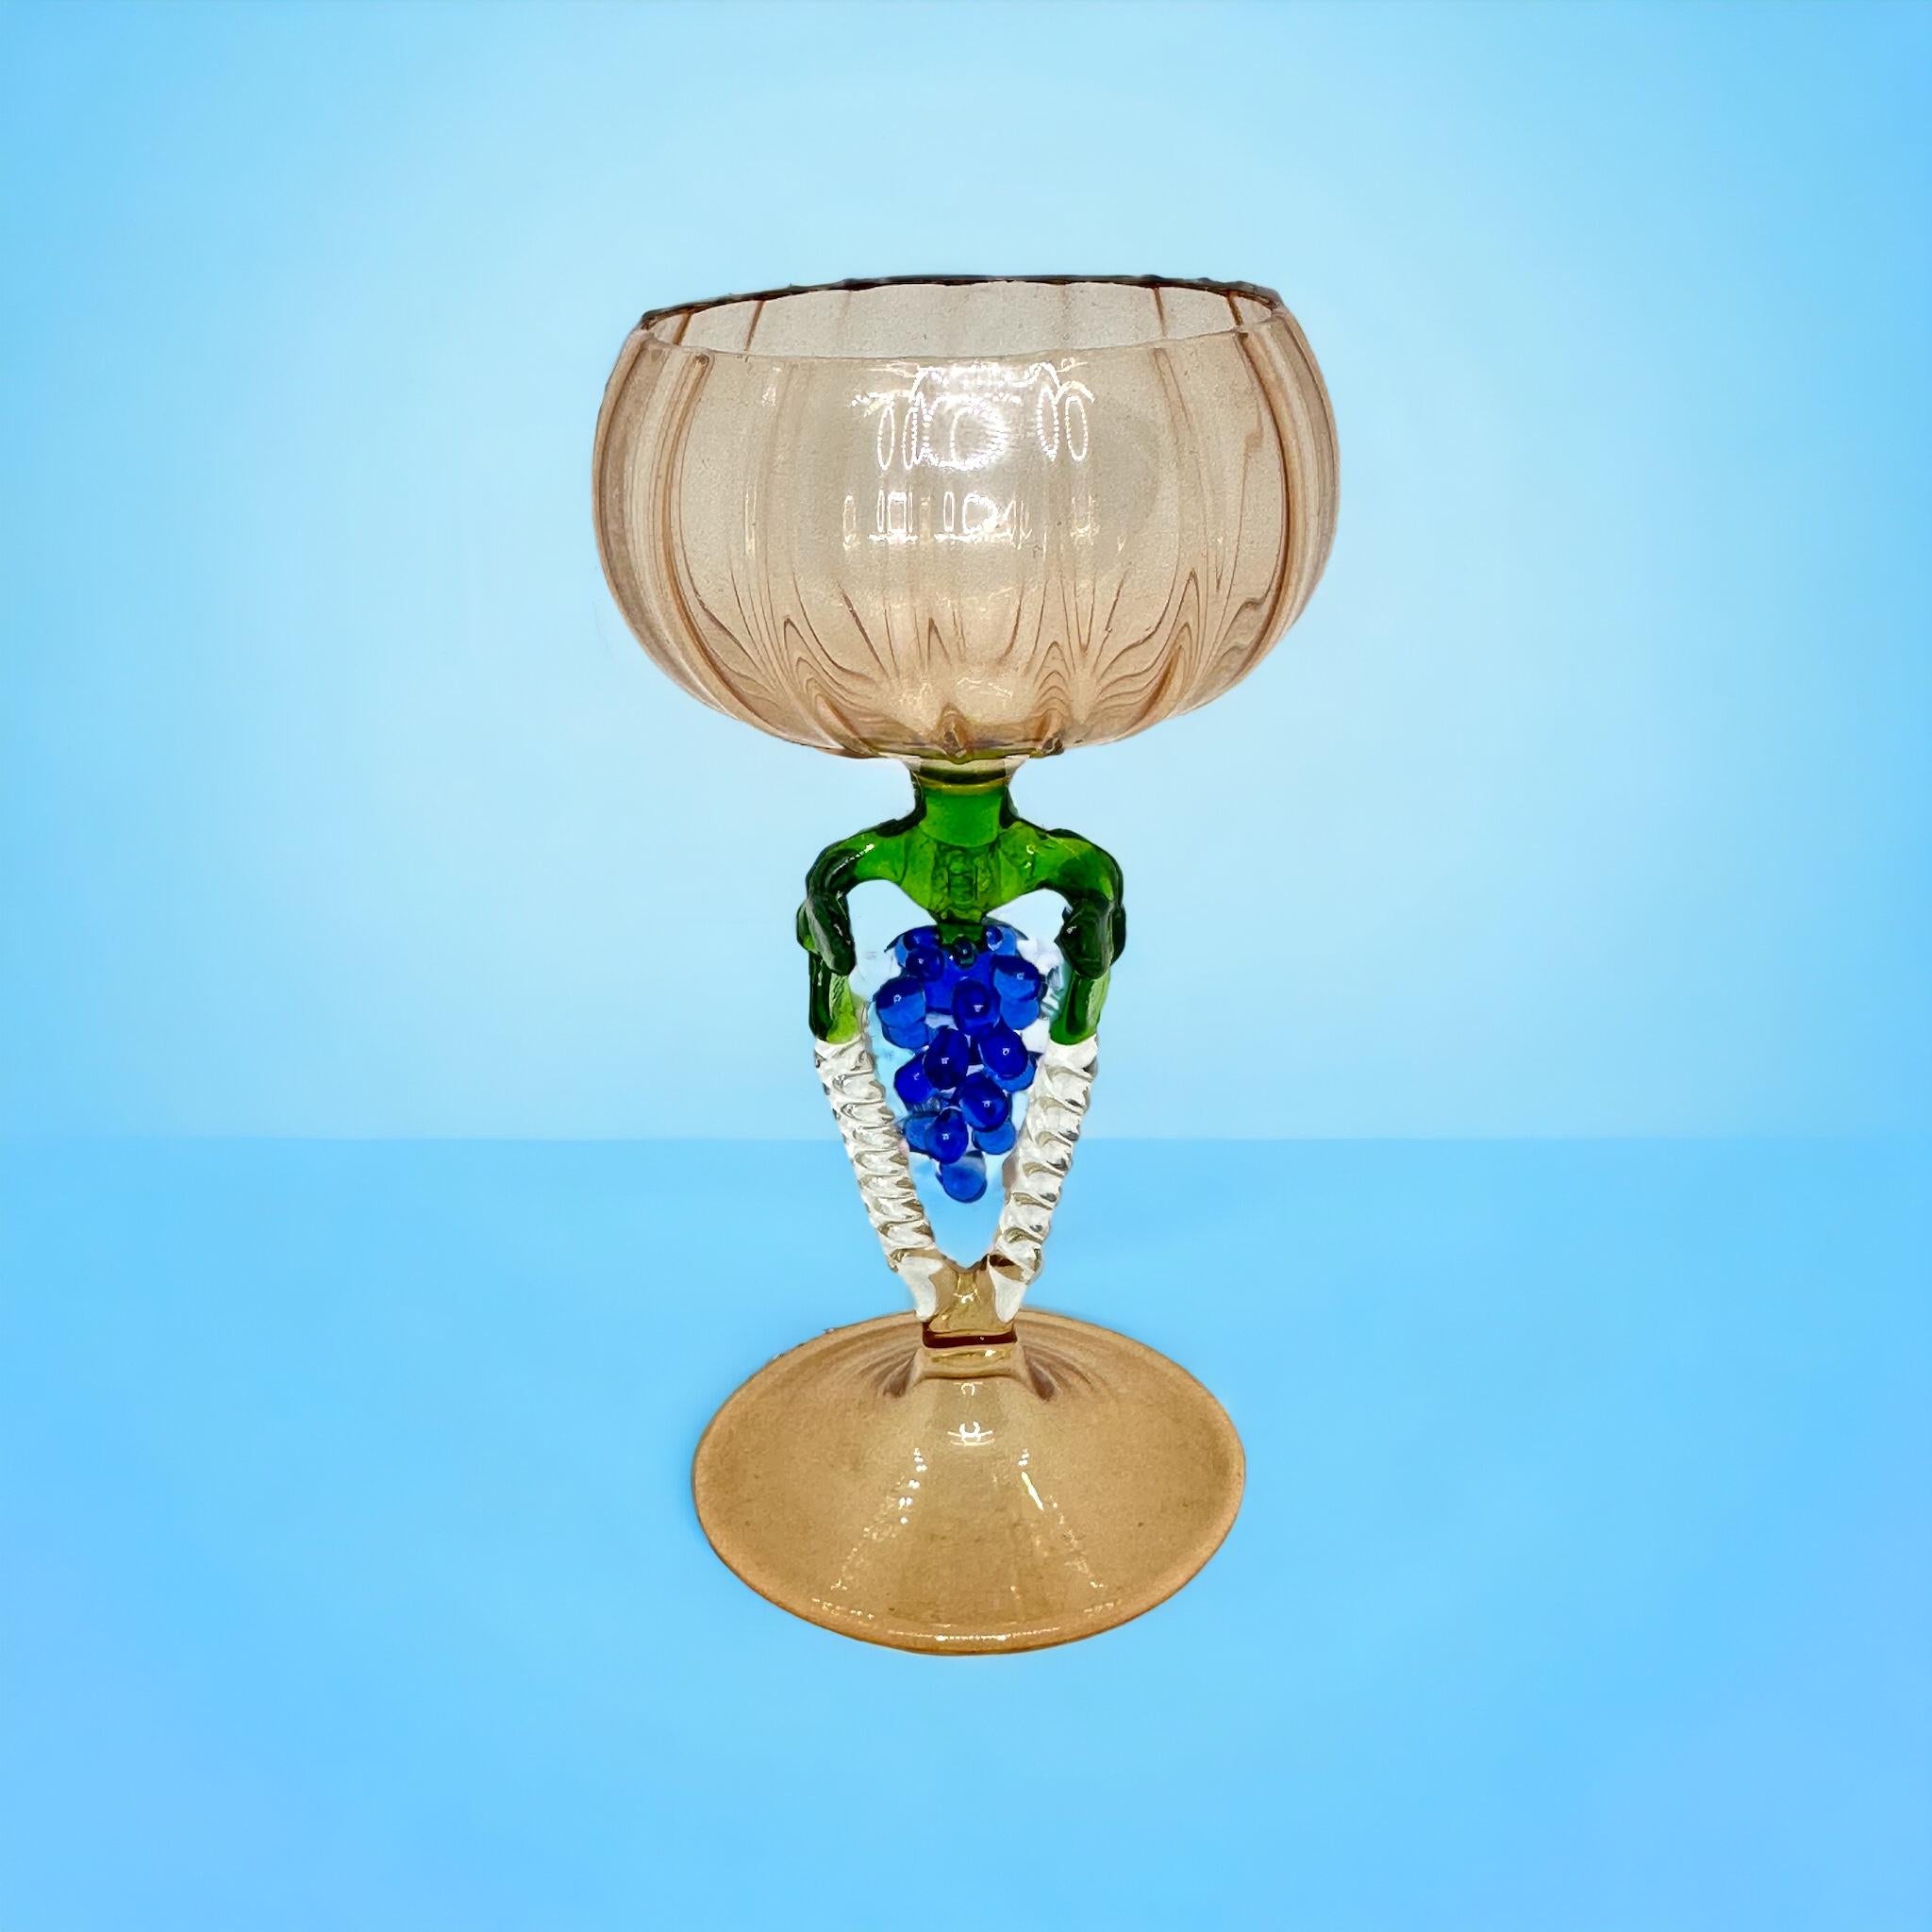 Dies ist ein wunderschönes, einfaches Vintage-Cocktailglas mit Stiel aus Österreich. Es zeigt eine Traubenwelle und ist im Bimini-Stil gehalten. Das hellrosa Glas hat ein geprägtes Design, der Stiel ist eine Weintraube in blauer Farbe. Der Sockel